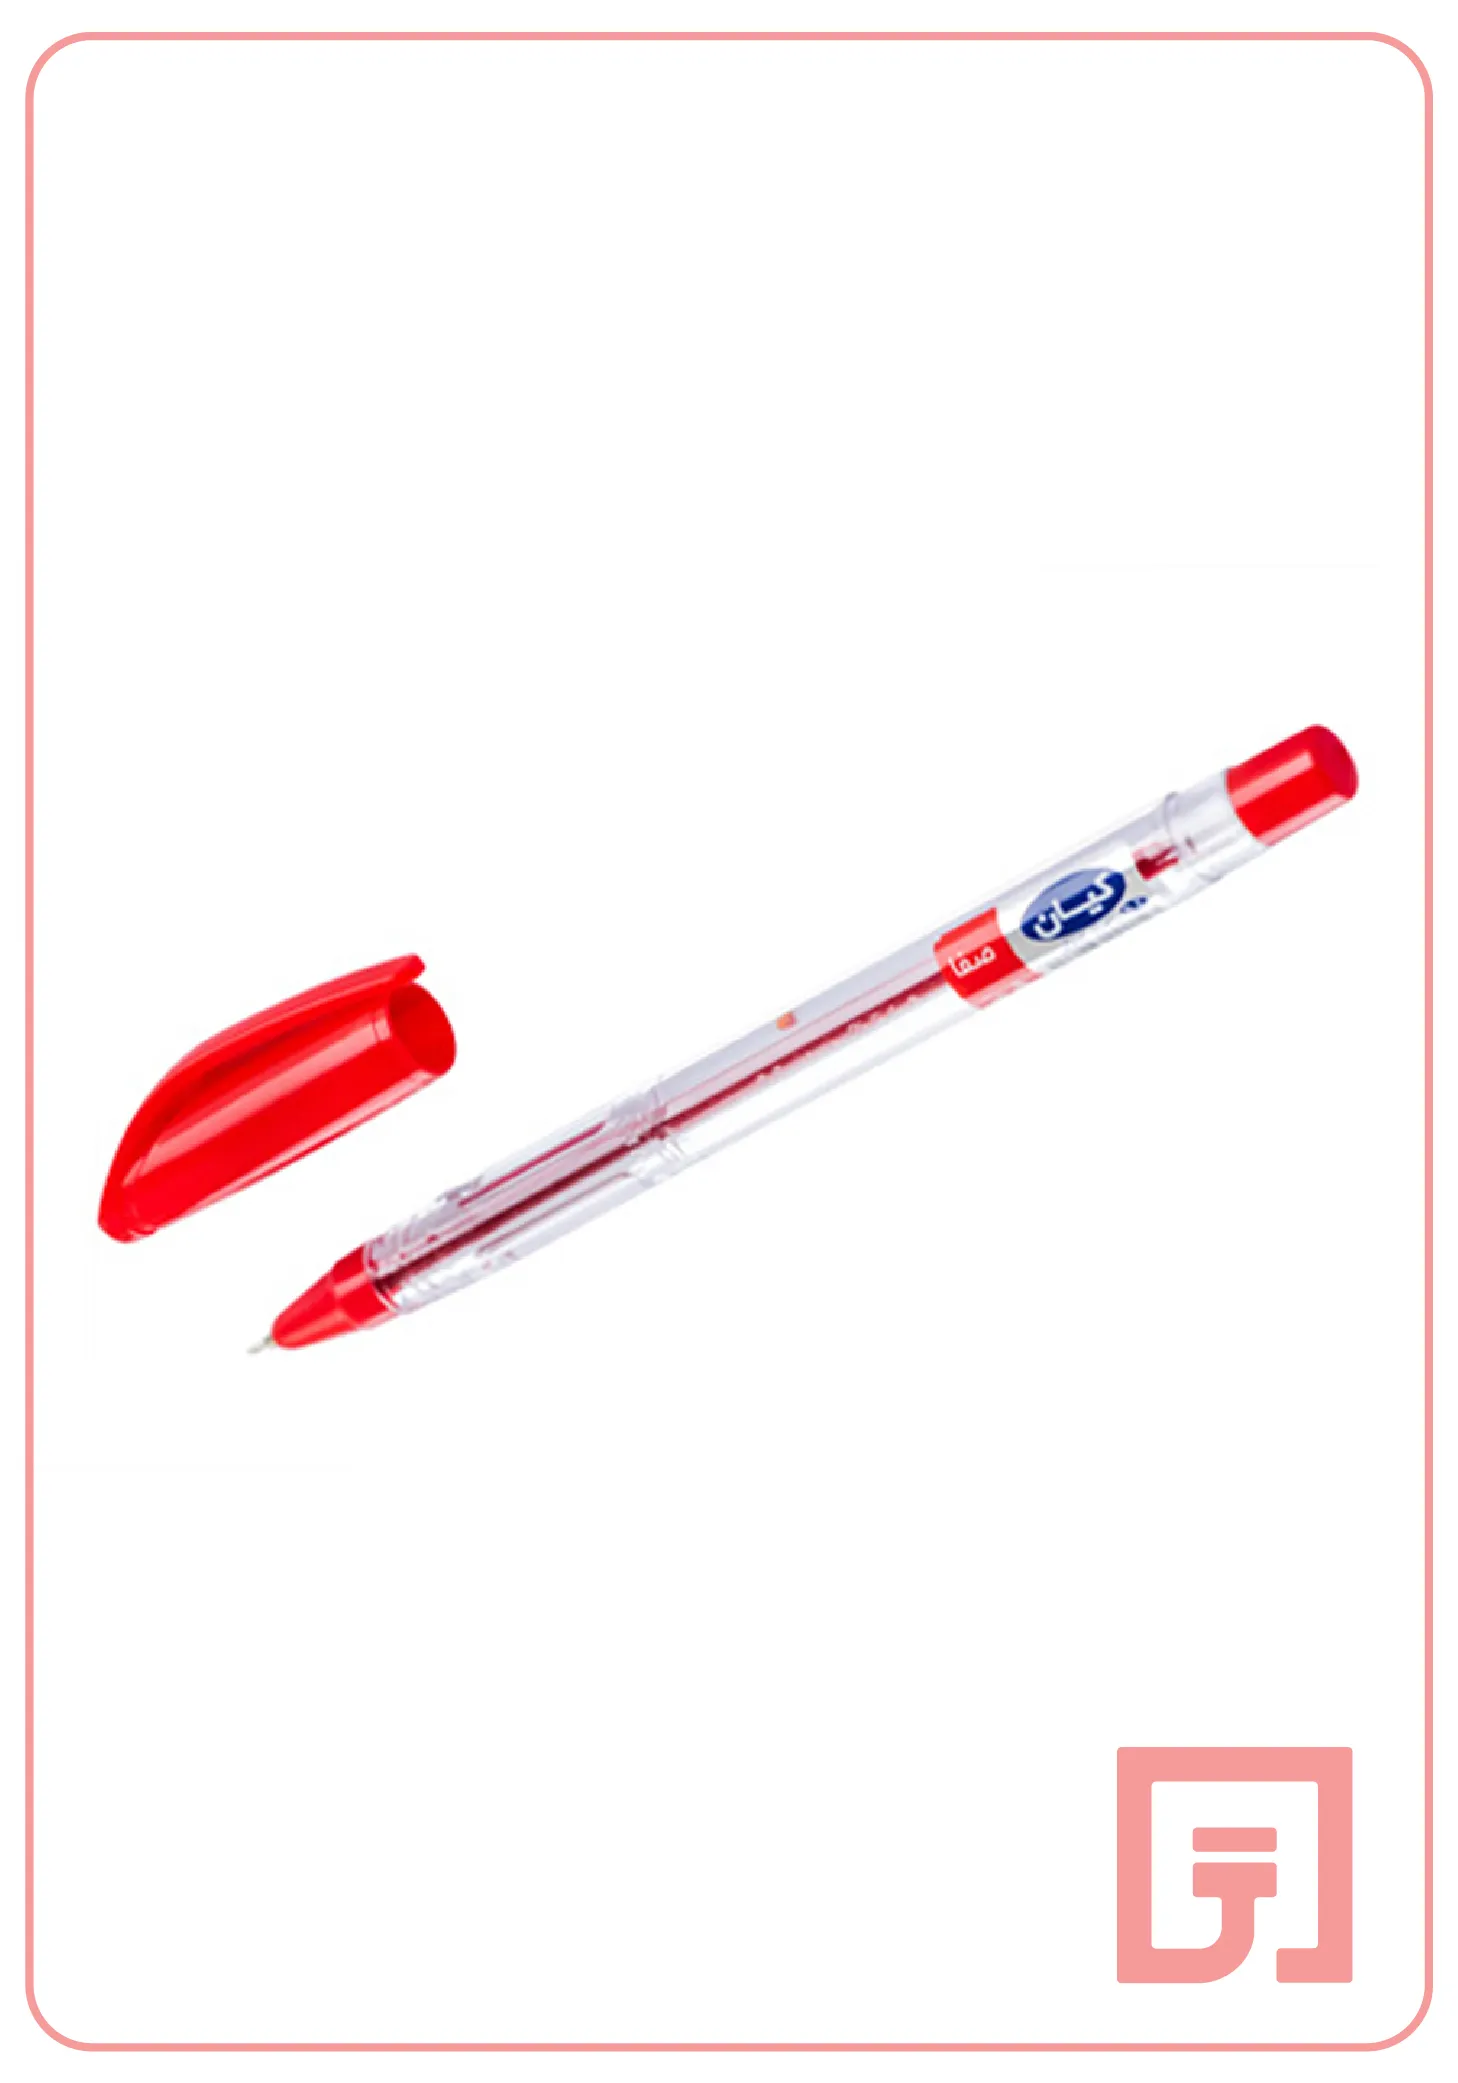 خودکار قرمز کیان قطر نوشتاری 0.7 میلی متر